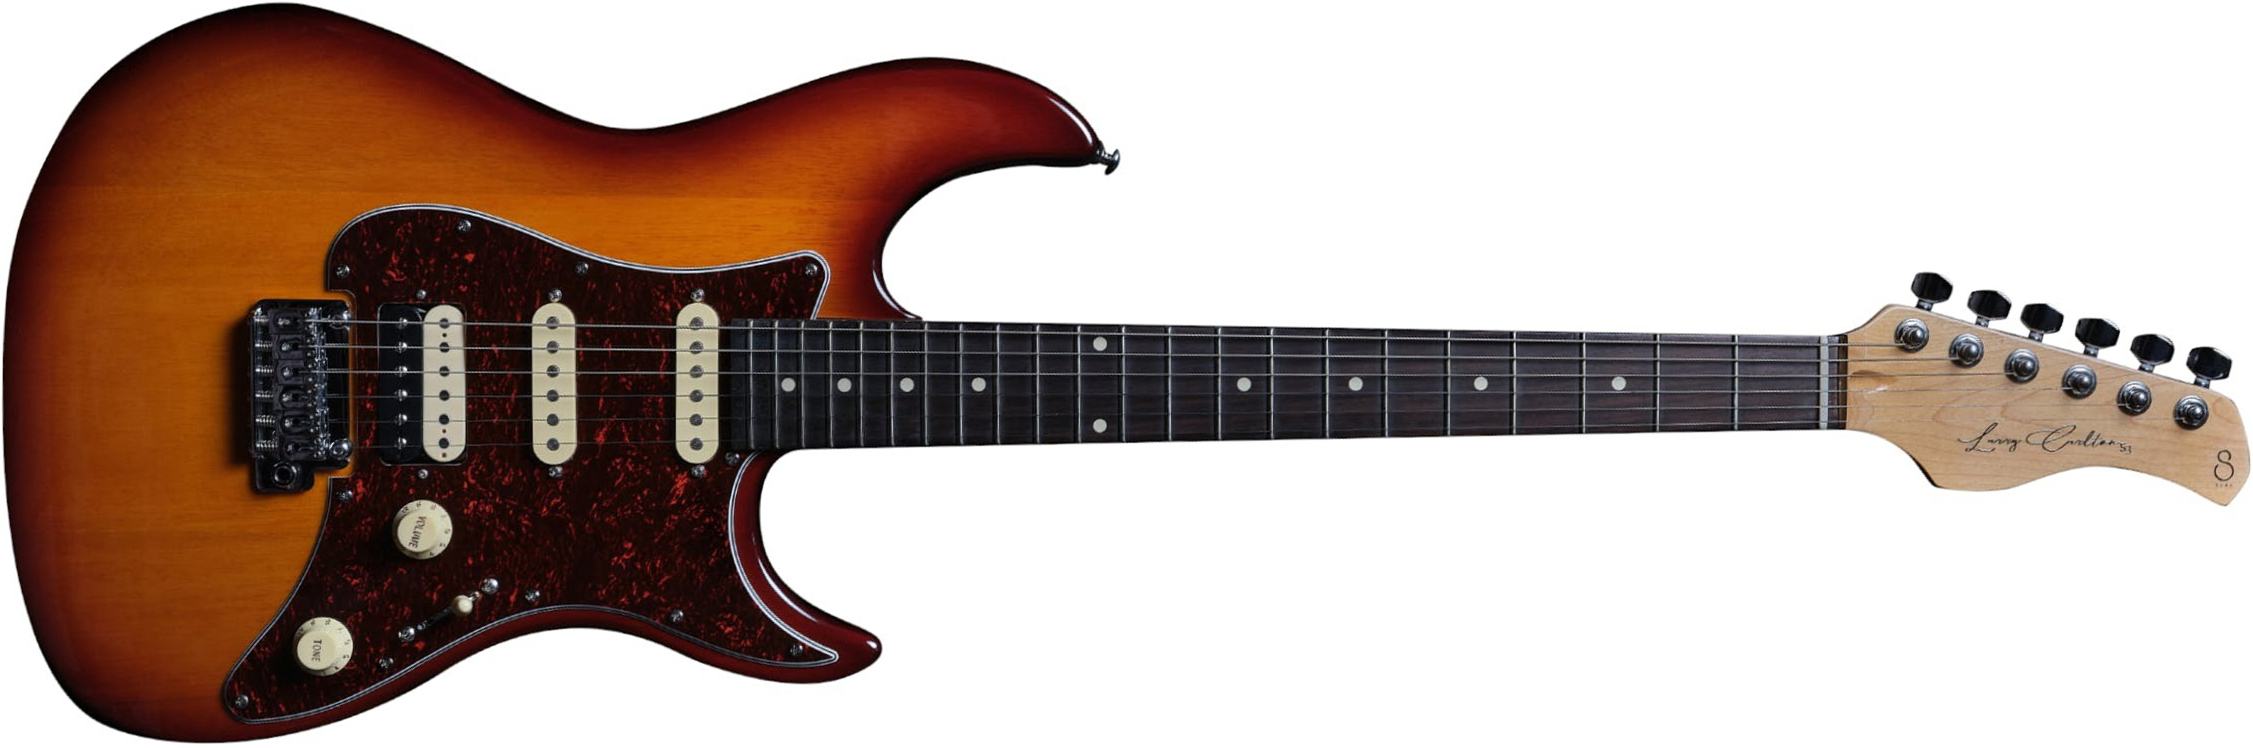 Sire Larry Carlton S3 Signature Hss Trem Rw - Tobacco Sunburst - E-Gitarre in Str-Form - Main picture